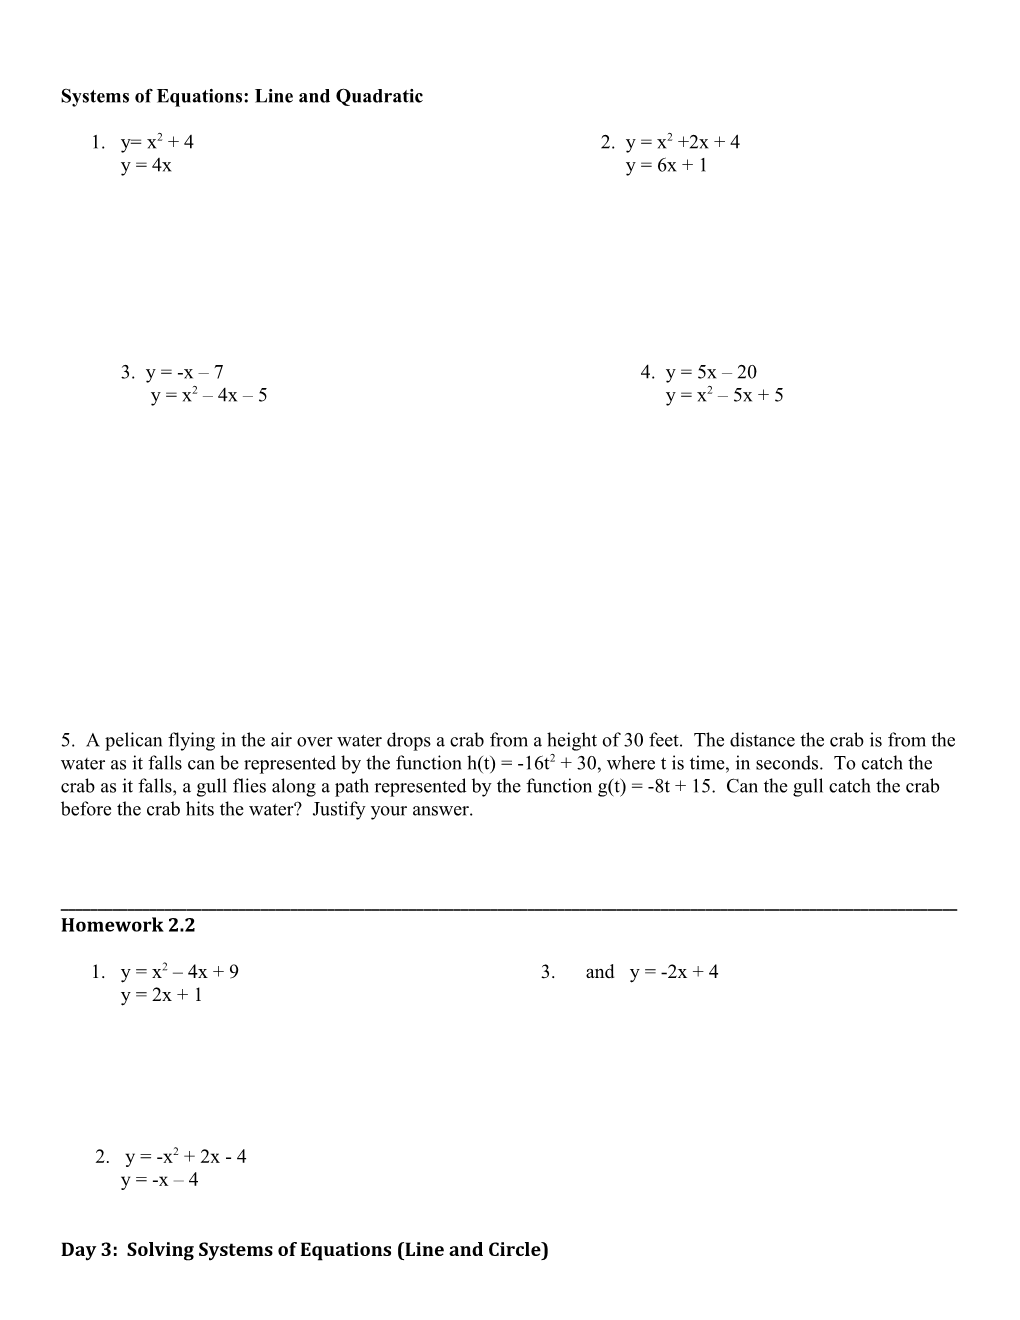 Unit 3: Quadratic Equations and Functions